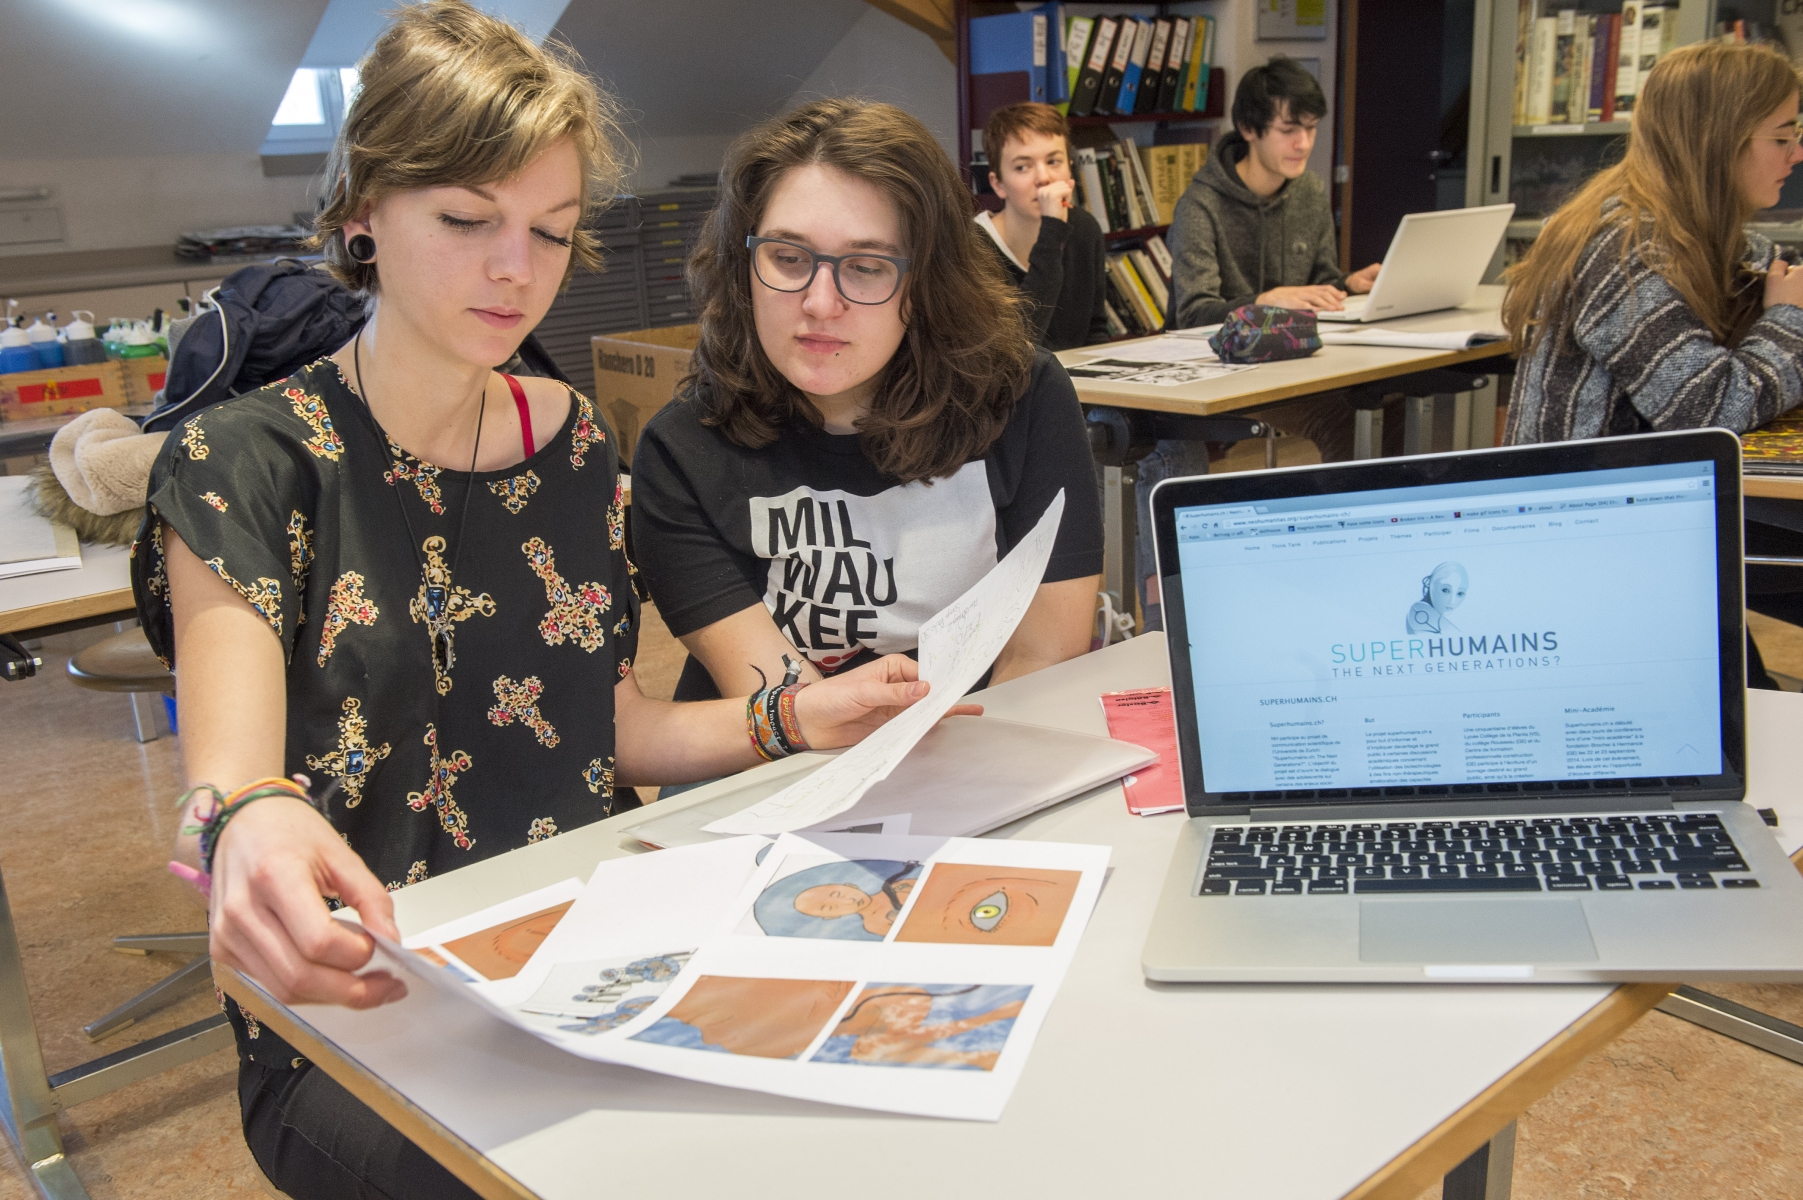 Soraya Poulin et Fiona Zähringer sont deux des étudiants qui participent au projet Superhumains. Elles viennent de présenter l'avancée des travaux de la classe devant des chercheurs de l'université de Zurich.